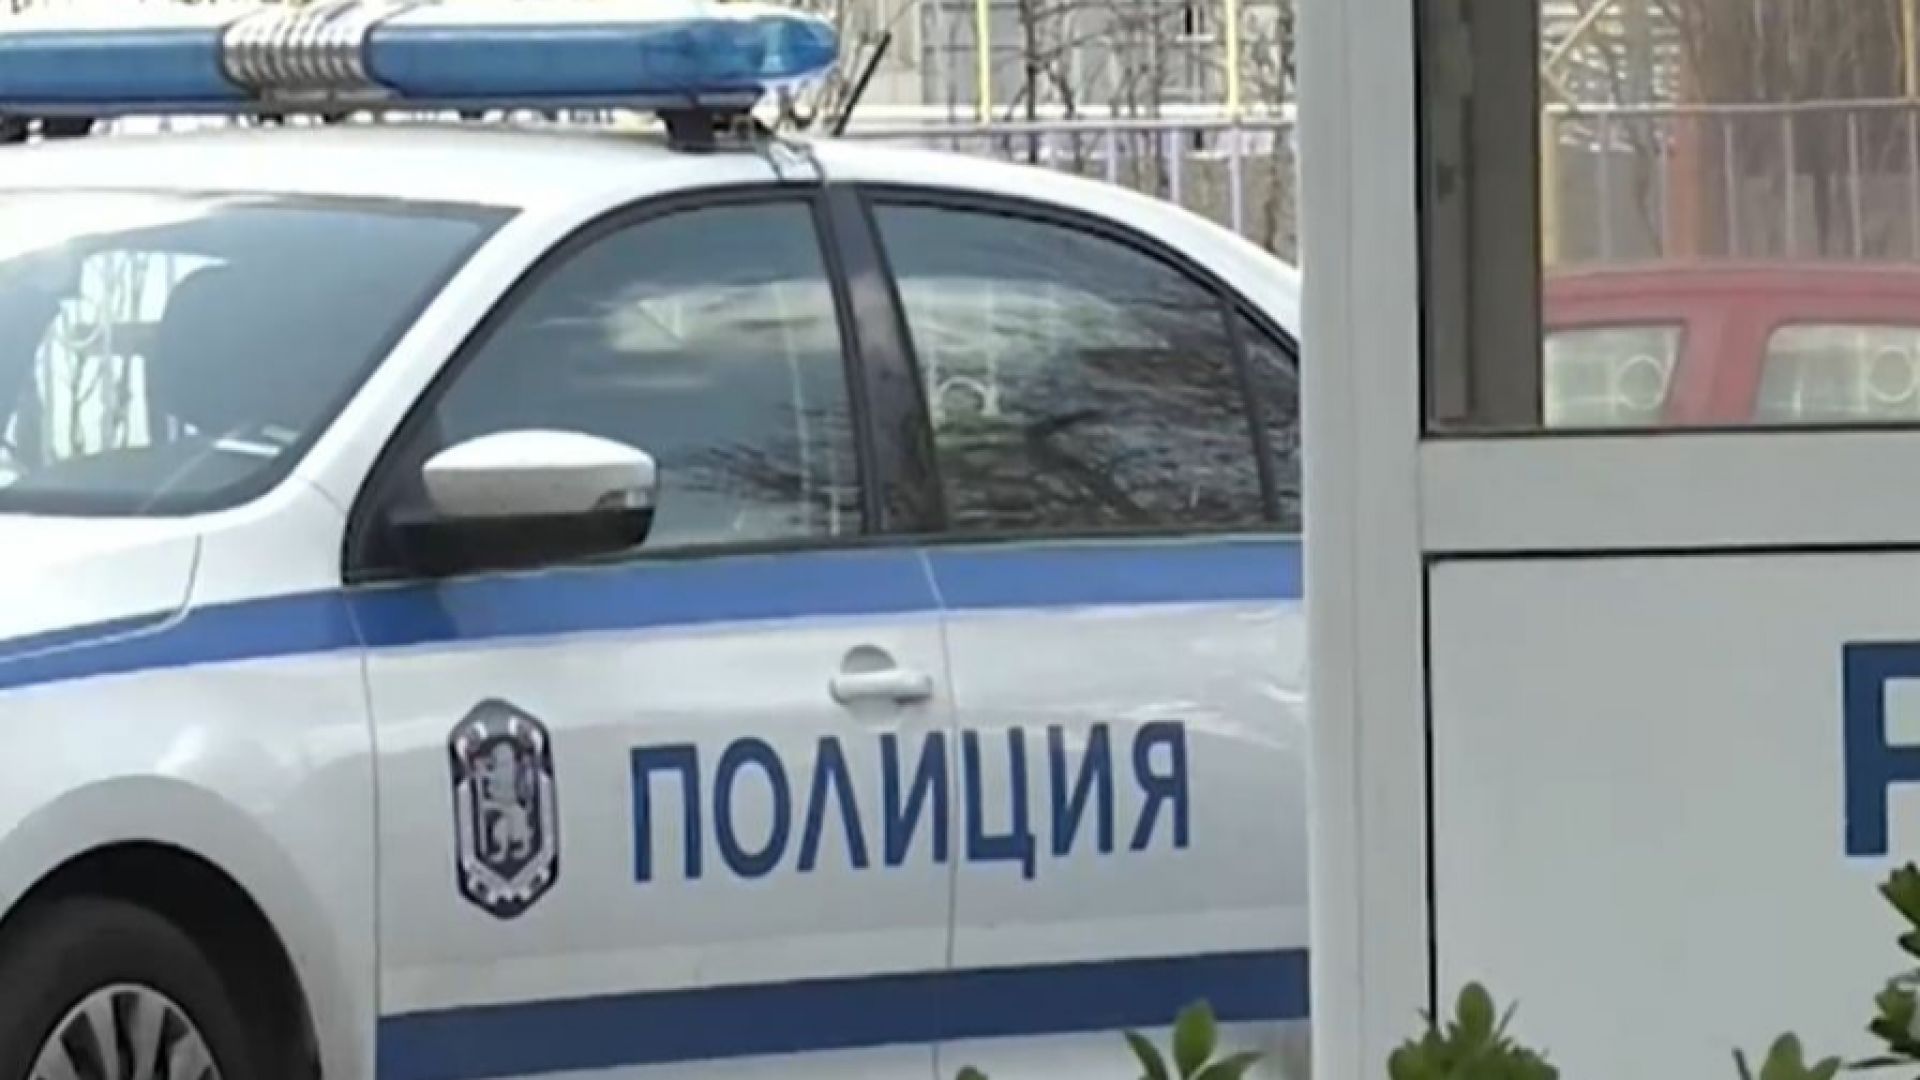 Заради стара вражда - баща и син пребили мъж в Радомирско